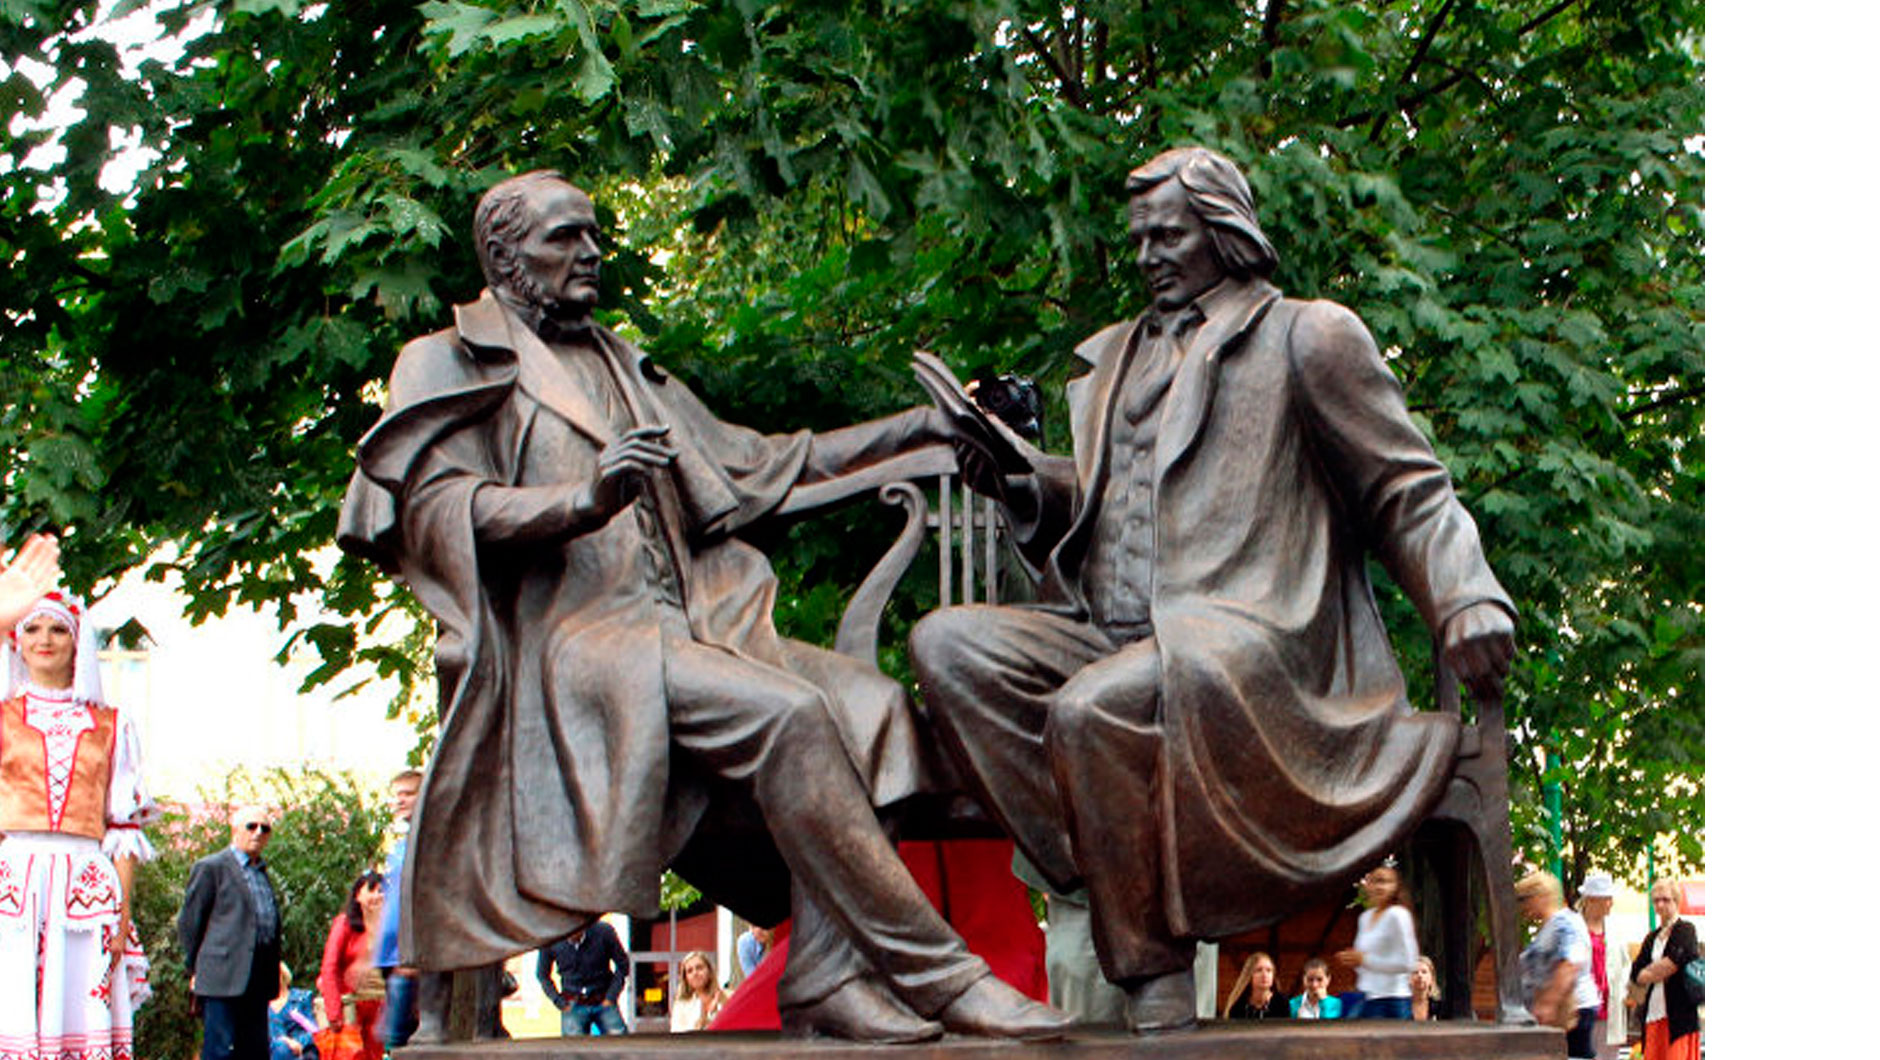 А это общий памятник Станиславу Монюшко и Винценту Дунину-Марцинкевичу - создателям белорусской национальной классической оперы